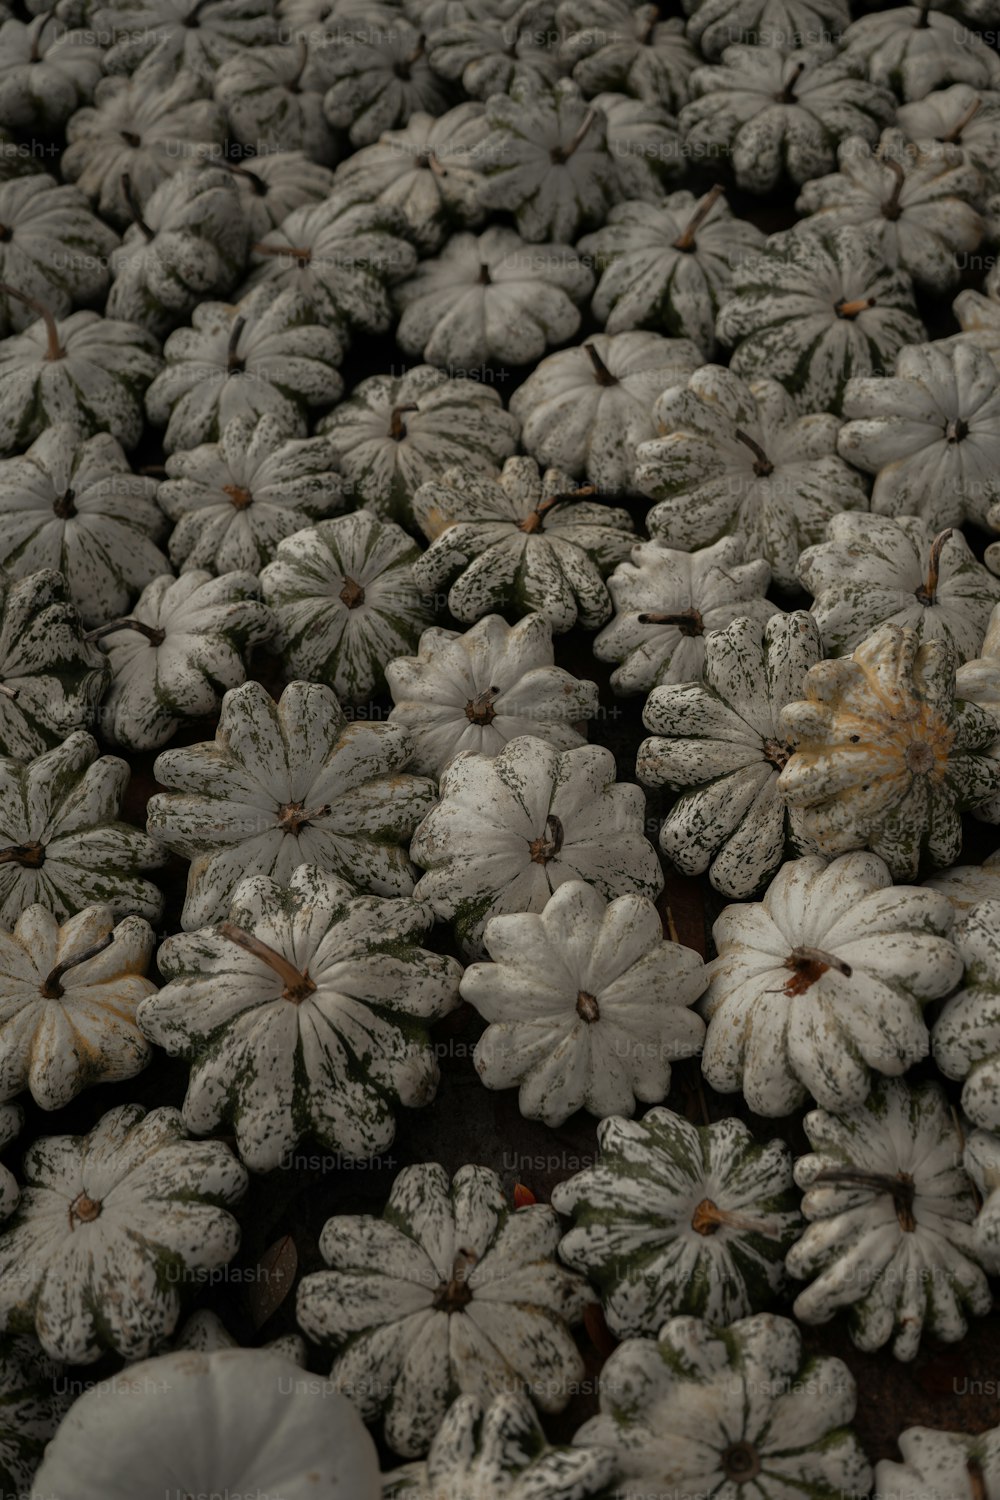 Un montón de plantas cubiertas de nieve sentadas encima de una mesa